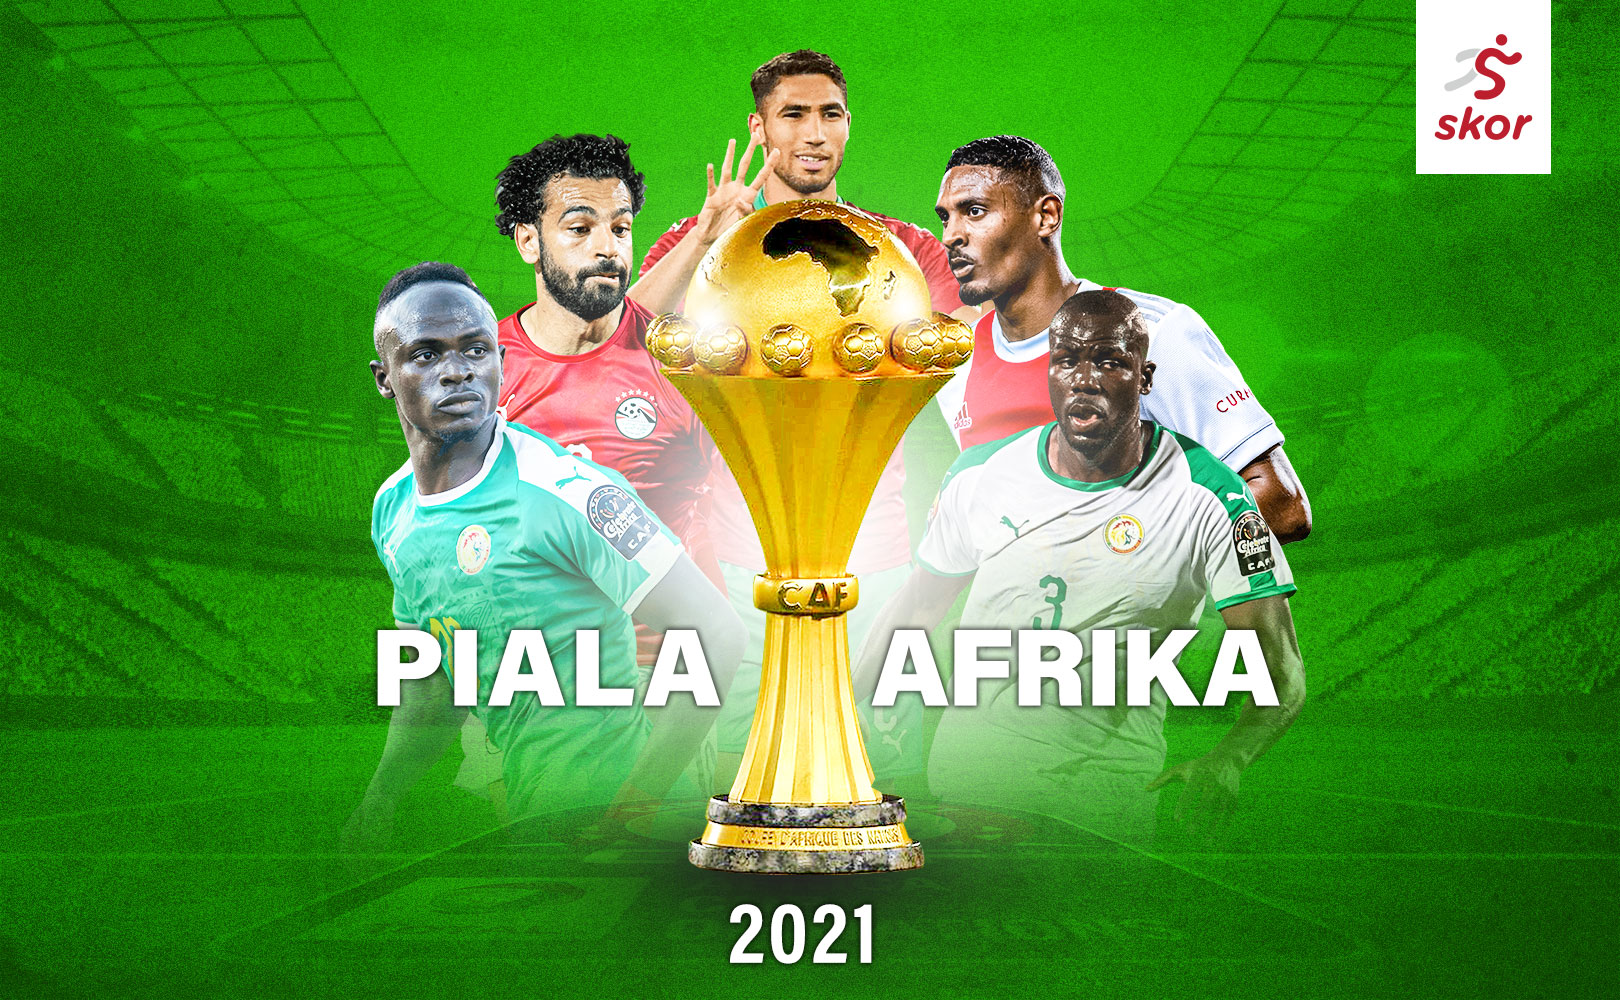 Cegah Covid-19 dan Racun, Timnas Maroko Bawa Kasur dan Makanan Khusus di Piala Afrika 2021